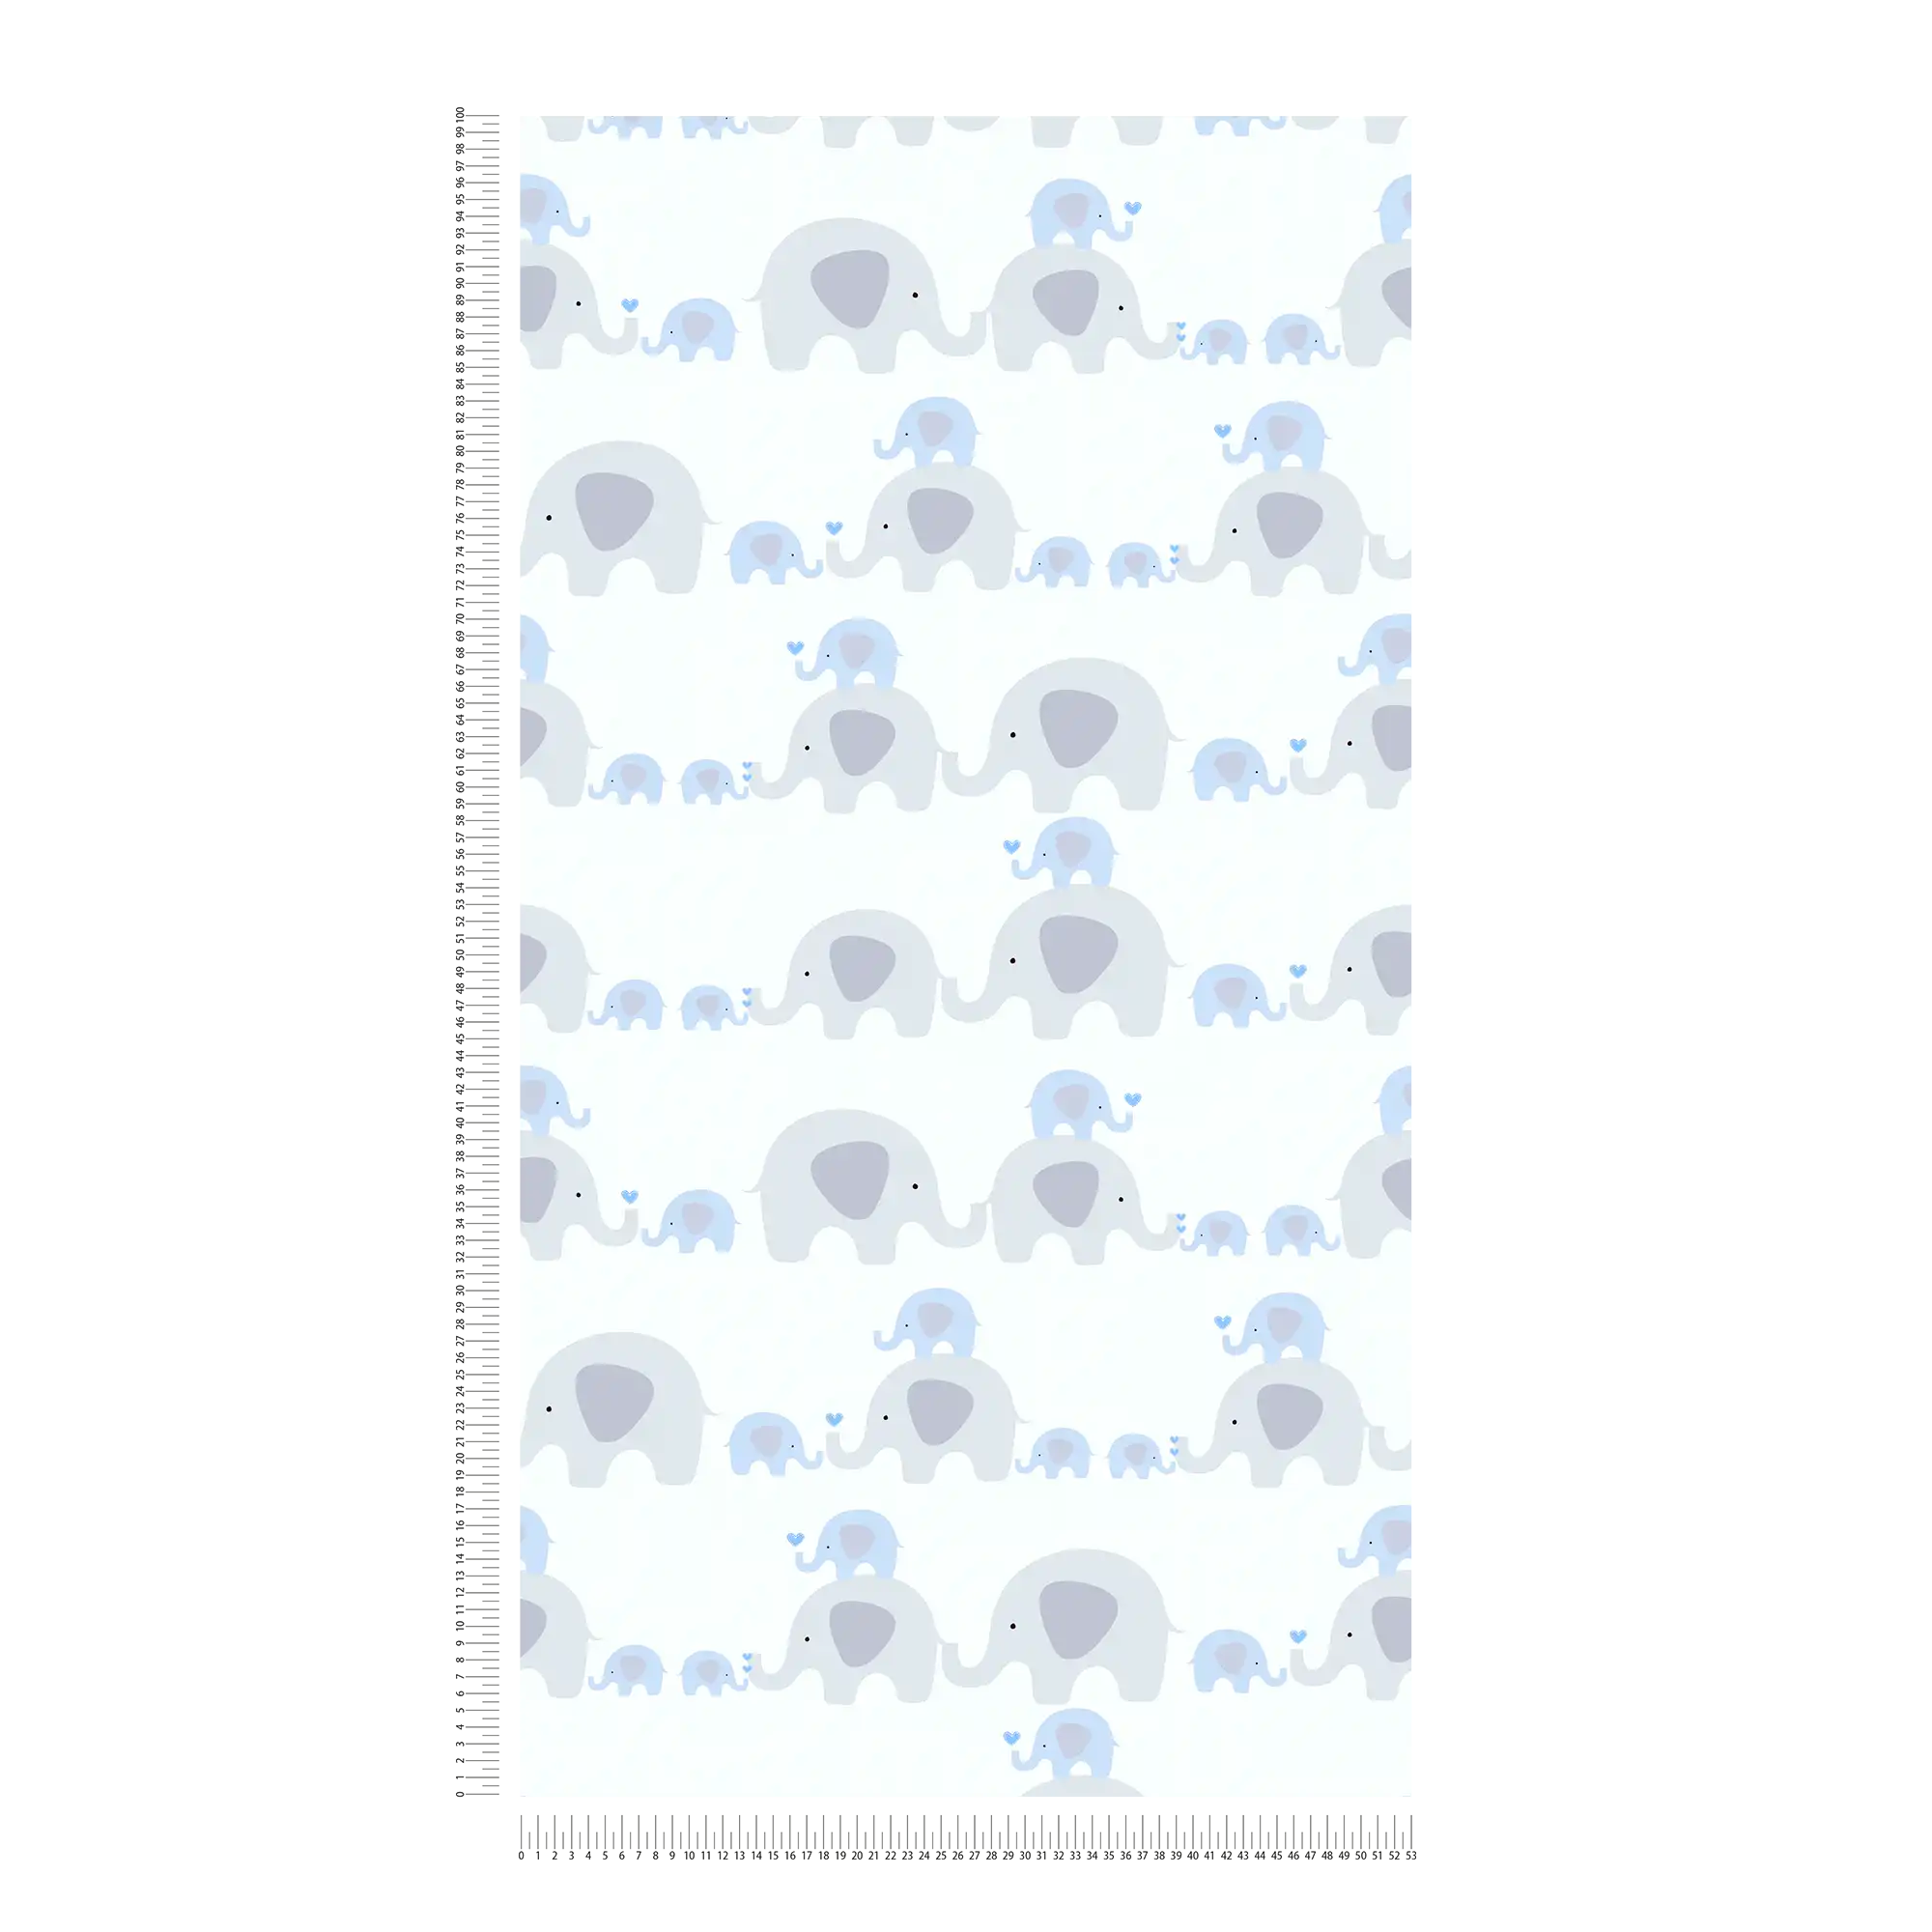             Kinderzimmer Tapete Junge Elefanten – Blau, Grau, Weiß
        